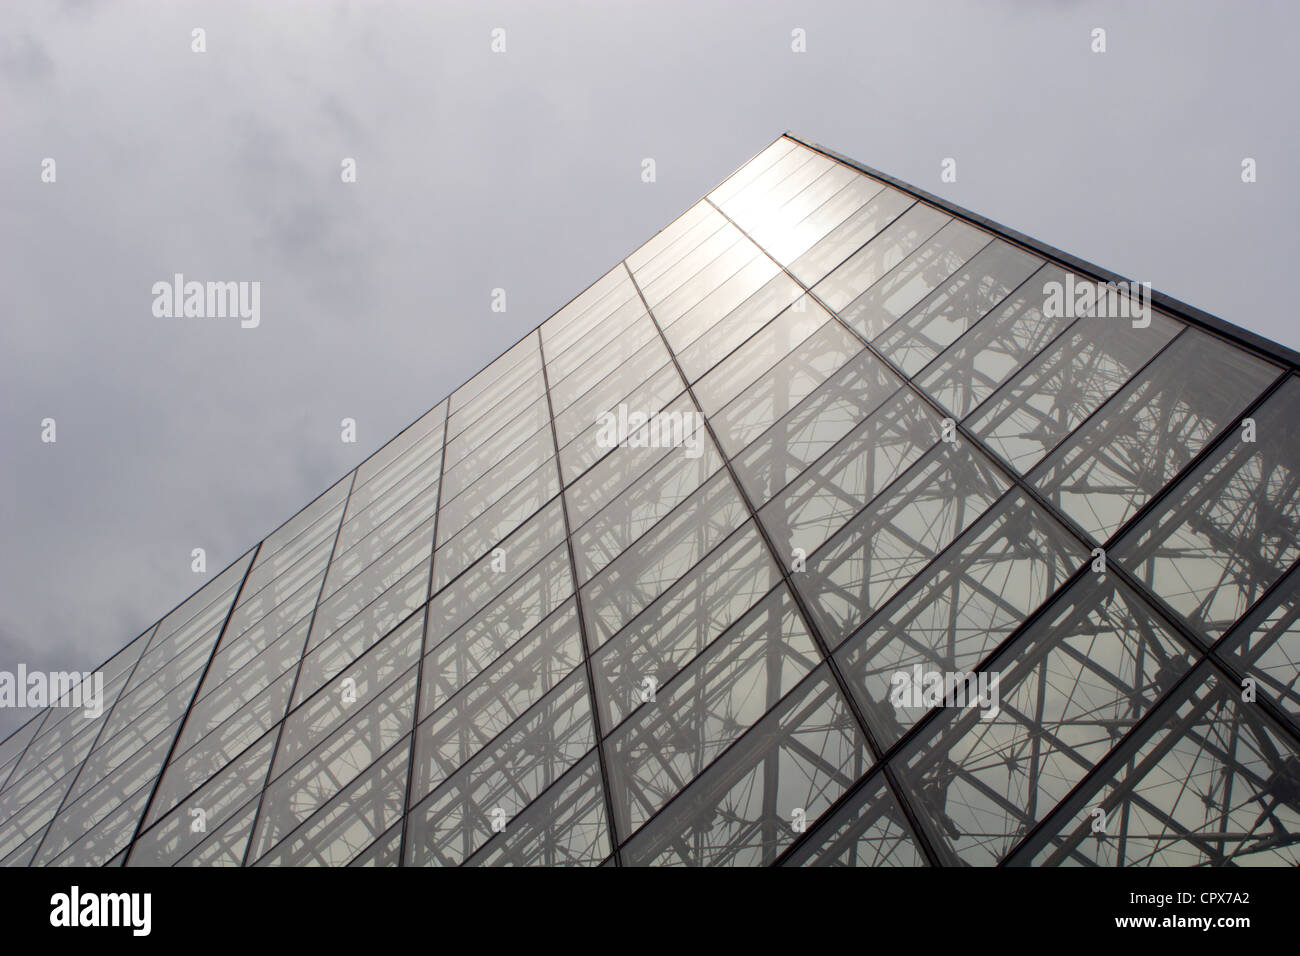 Louvre - pyramide de verre Banque D'Images